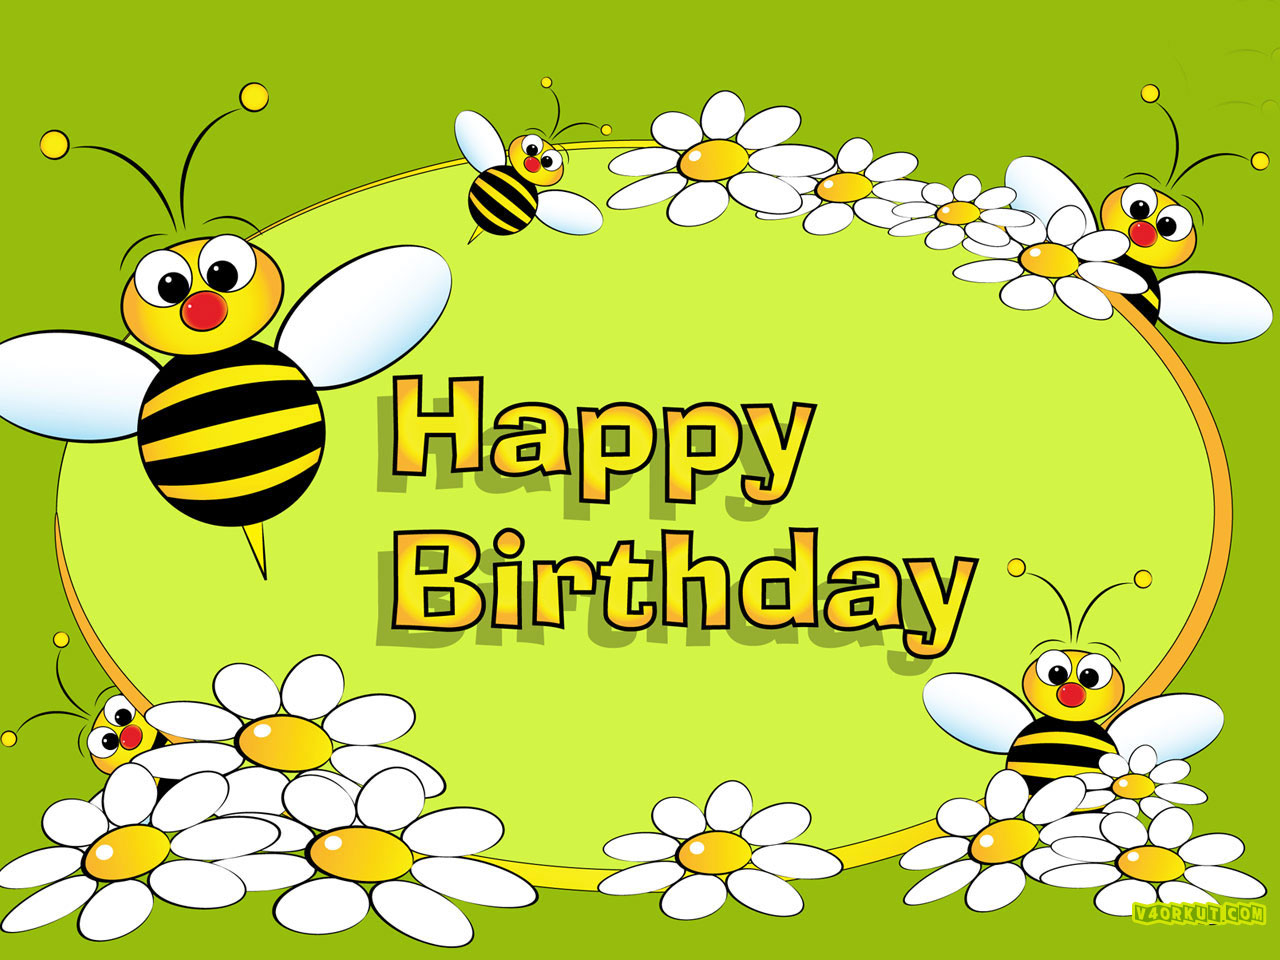 かわいい誕生日の壁紙,蜂,ミツバチ,昆虫,膜の翼のある昆虫,黄